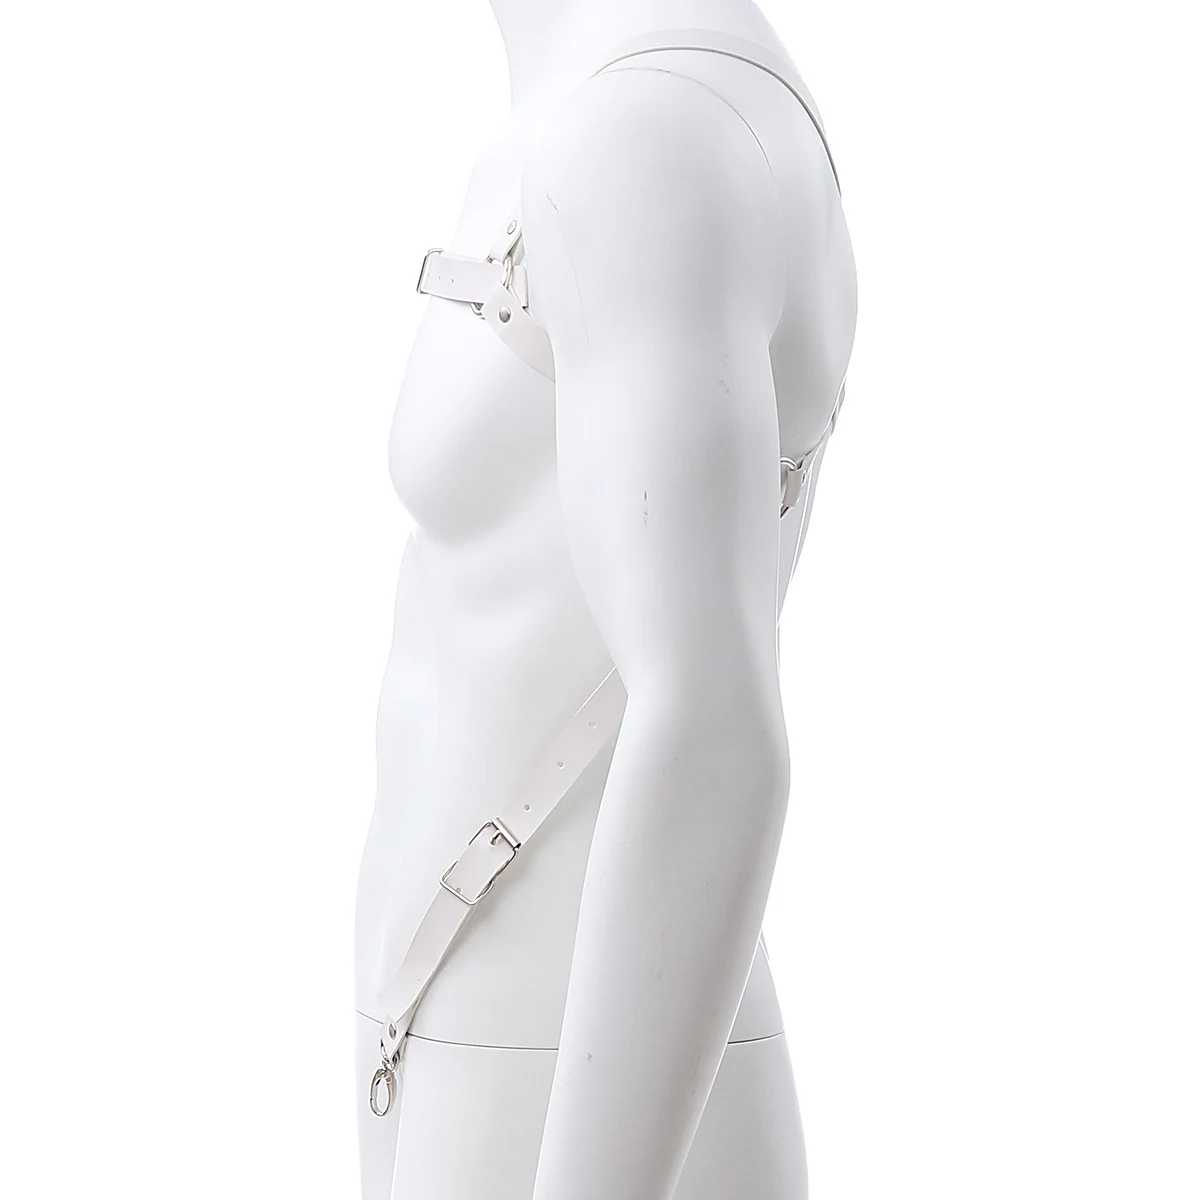 Ремни подтяжки из искусственной кожи Регулируемый ремень для мужчин PU танцевальная одежда для тела Связывание вечерние костюм одежда аксессуары белый/черный